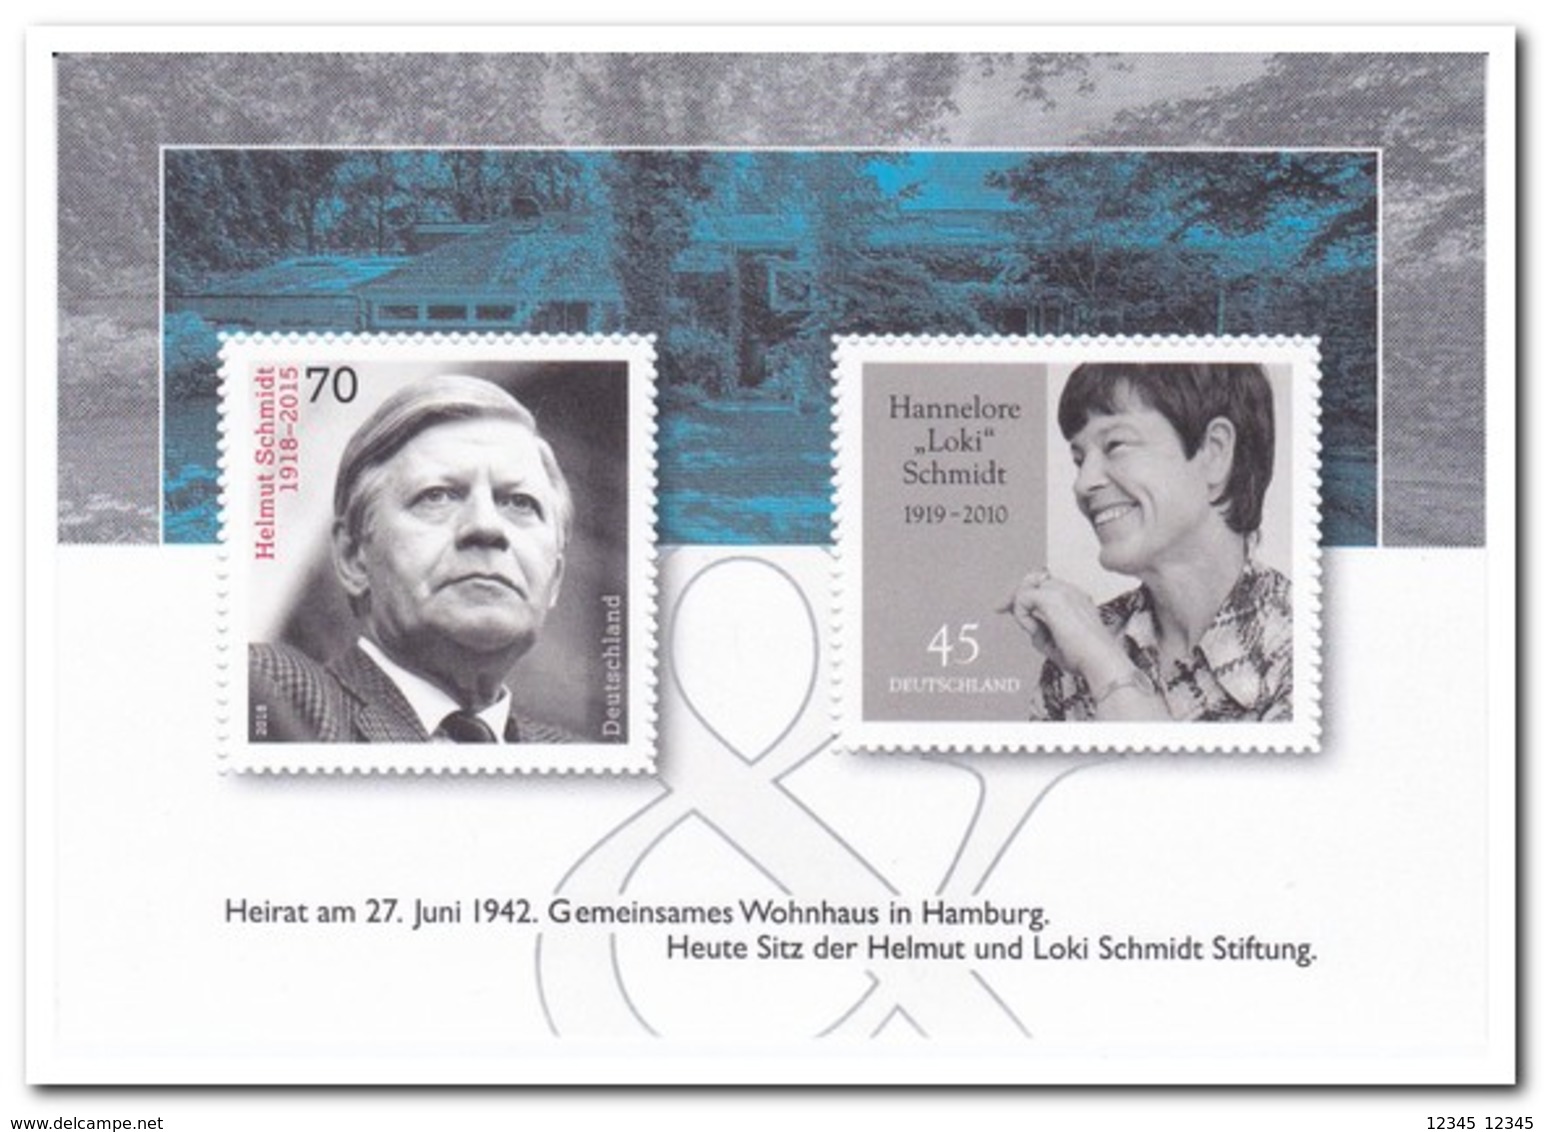 Duitsland 2019, Postfris MNH, Helmut Schmidt & Hannelore Schmidt - Ongebruikt